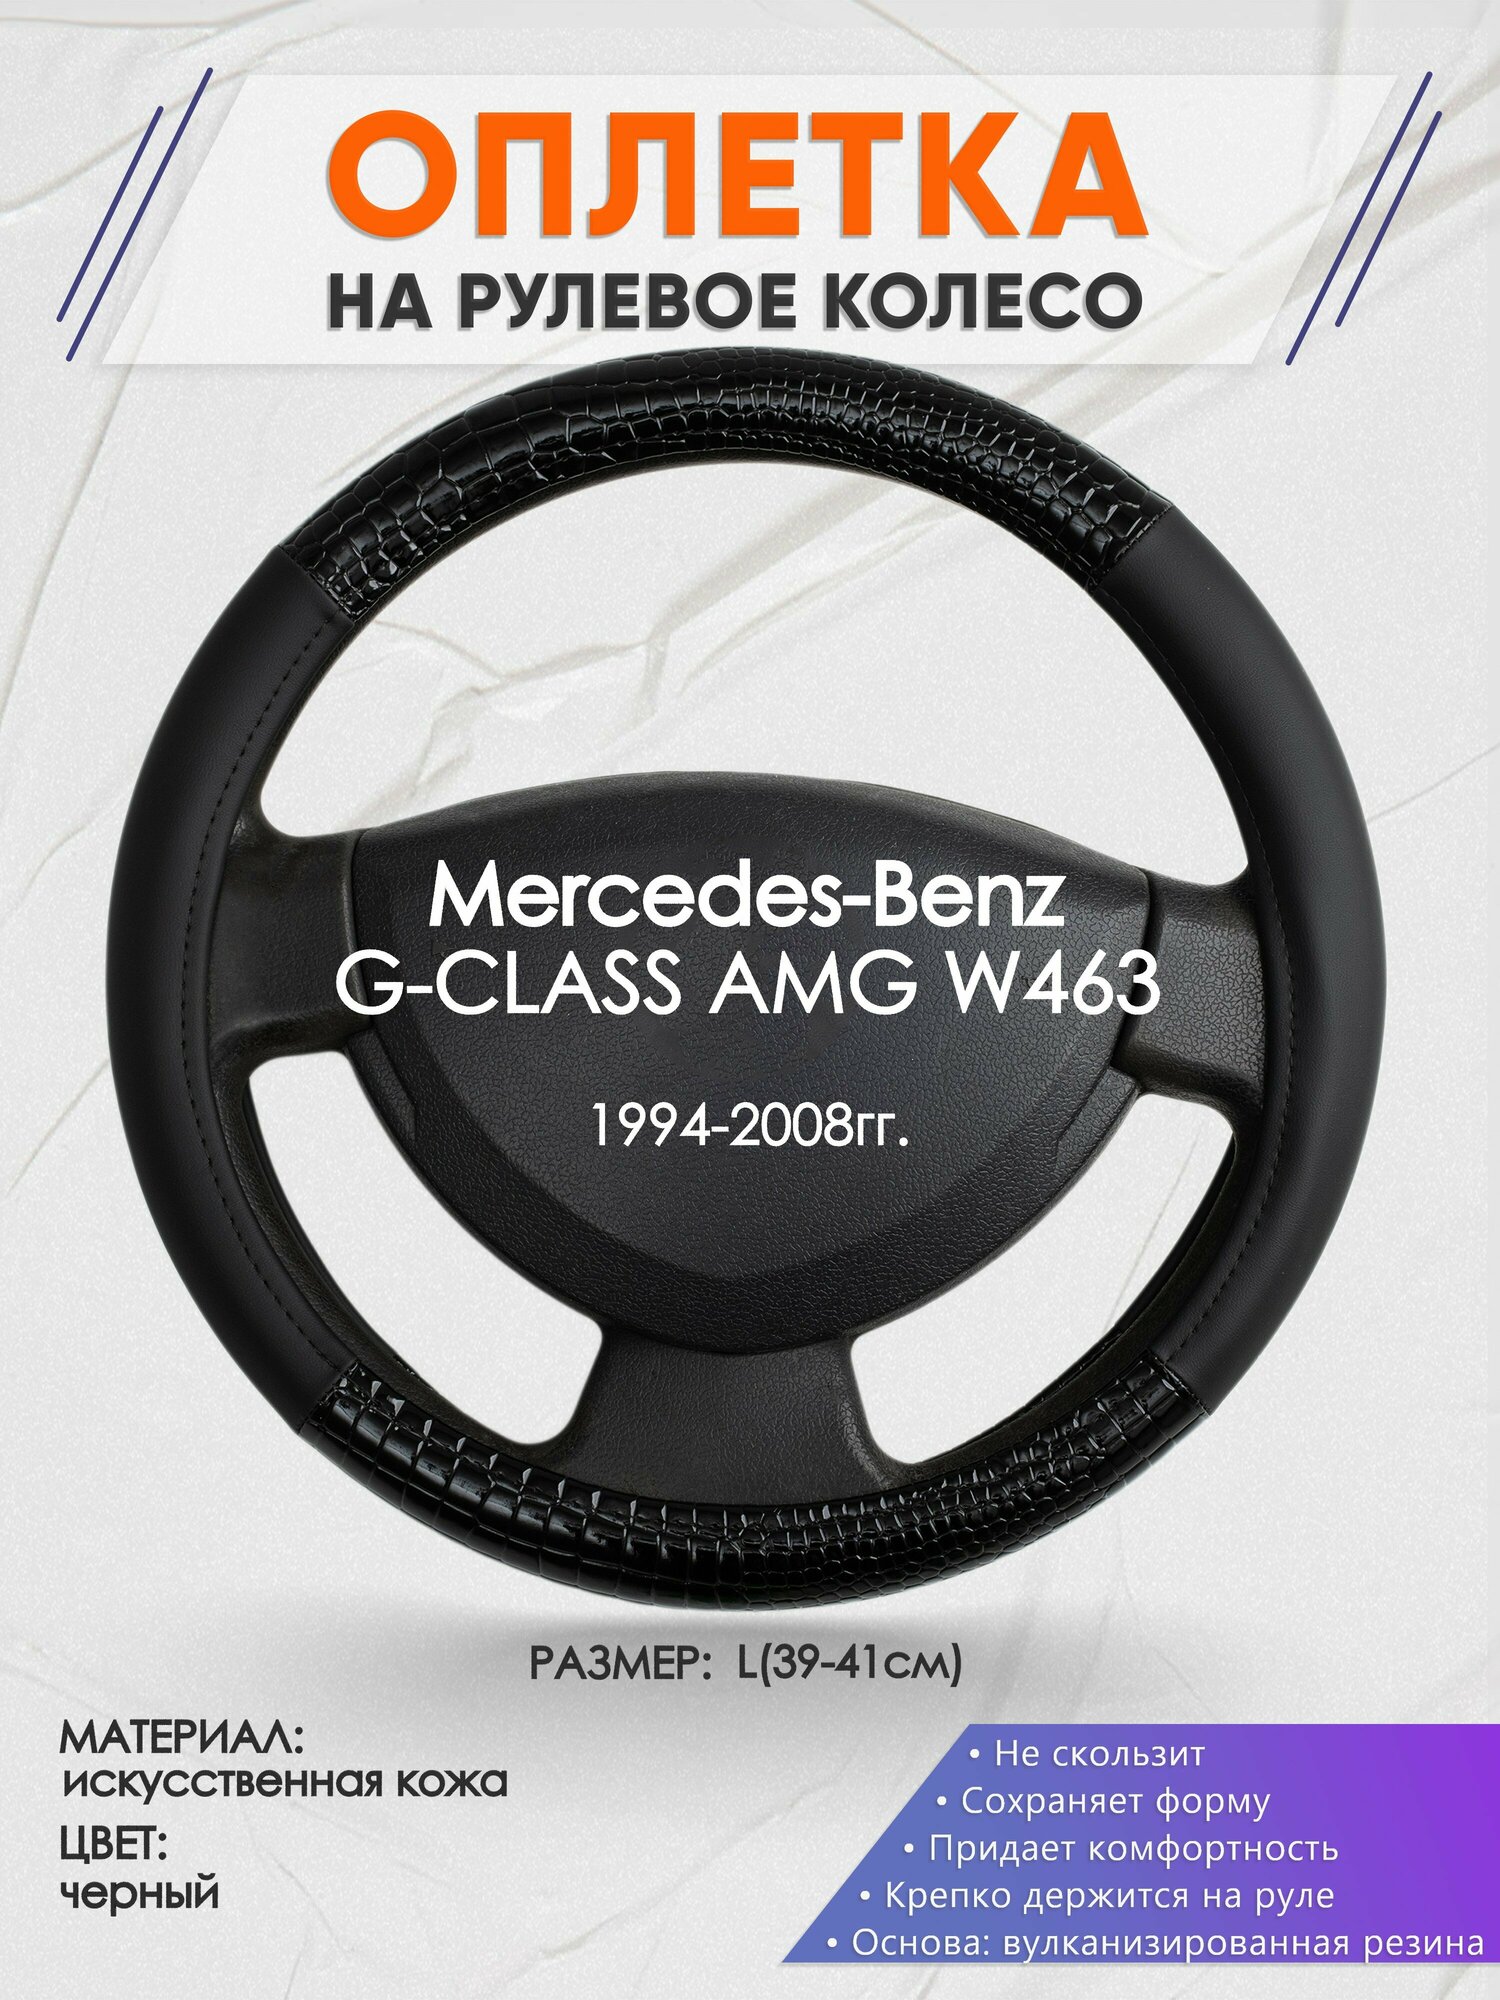 Оплетка на руль для Mercedes-Benz G-CLASS AMG W463(Мерседес Бенц Г Класс) 1994-2008, L(39-41см), Искусственная кожа 83